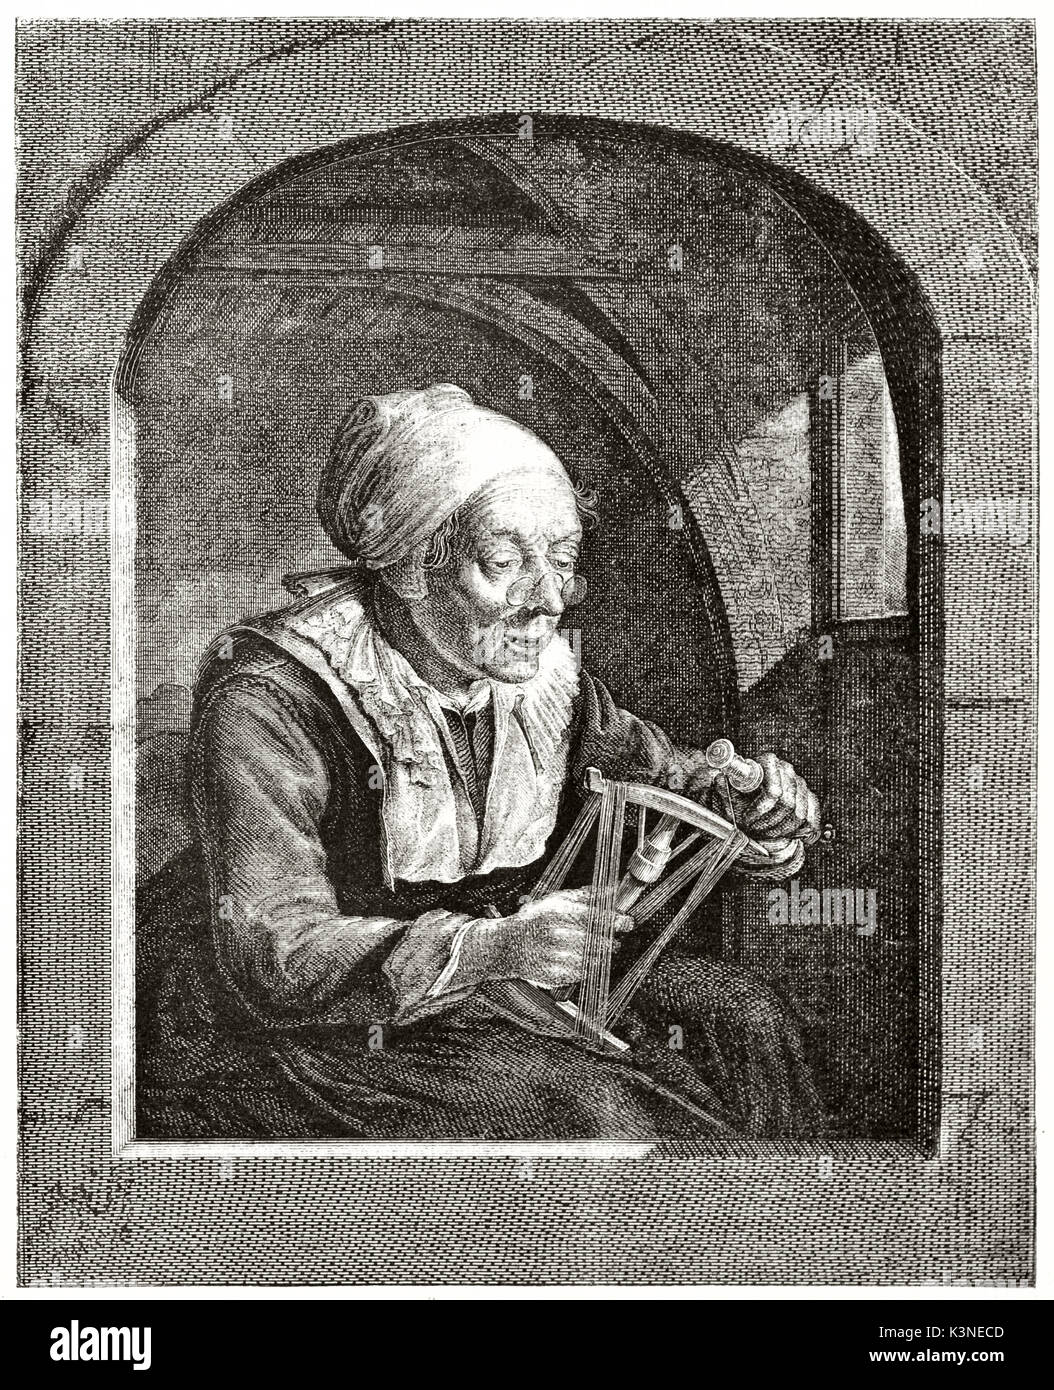 Ancien portrait gravé d'une vieille femme ceinture de threads. Elle est comme une grand-mère affiché dans un cadre de fenêtre. Créé par Girandet après Dow et Wille publié le magasin pittoresque Paris 1839 Banque D'Images